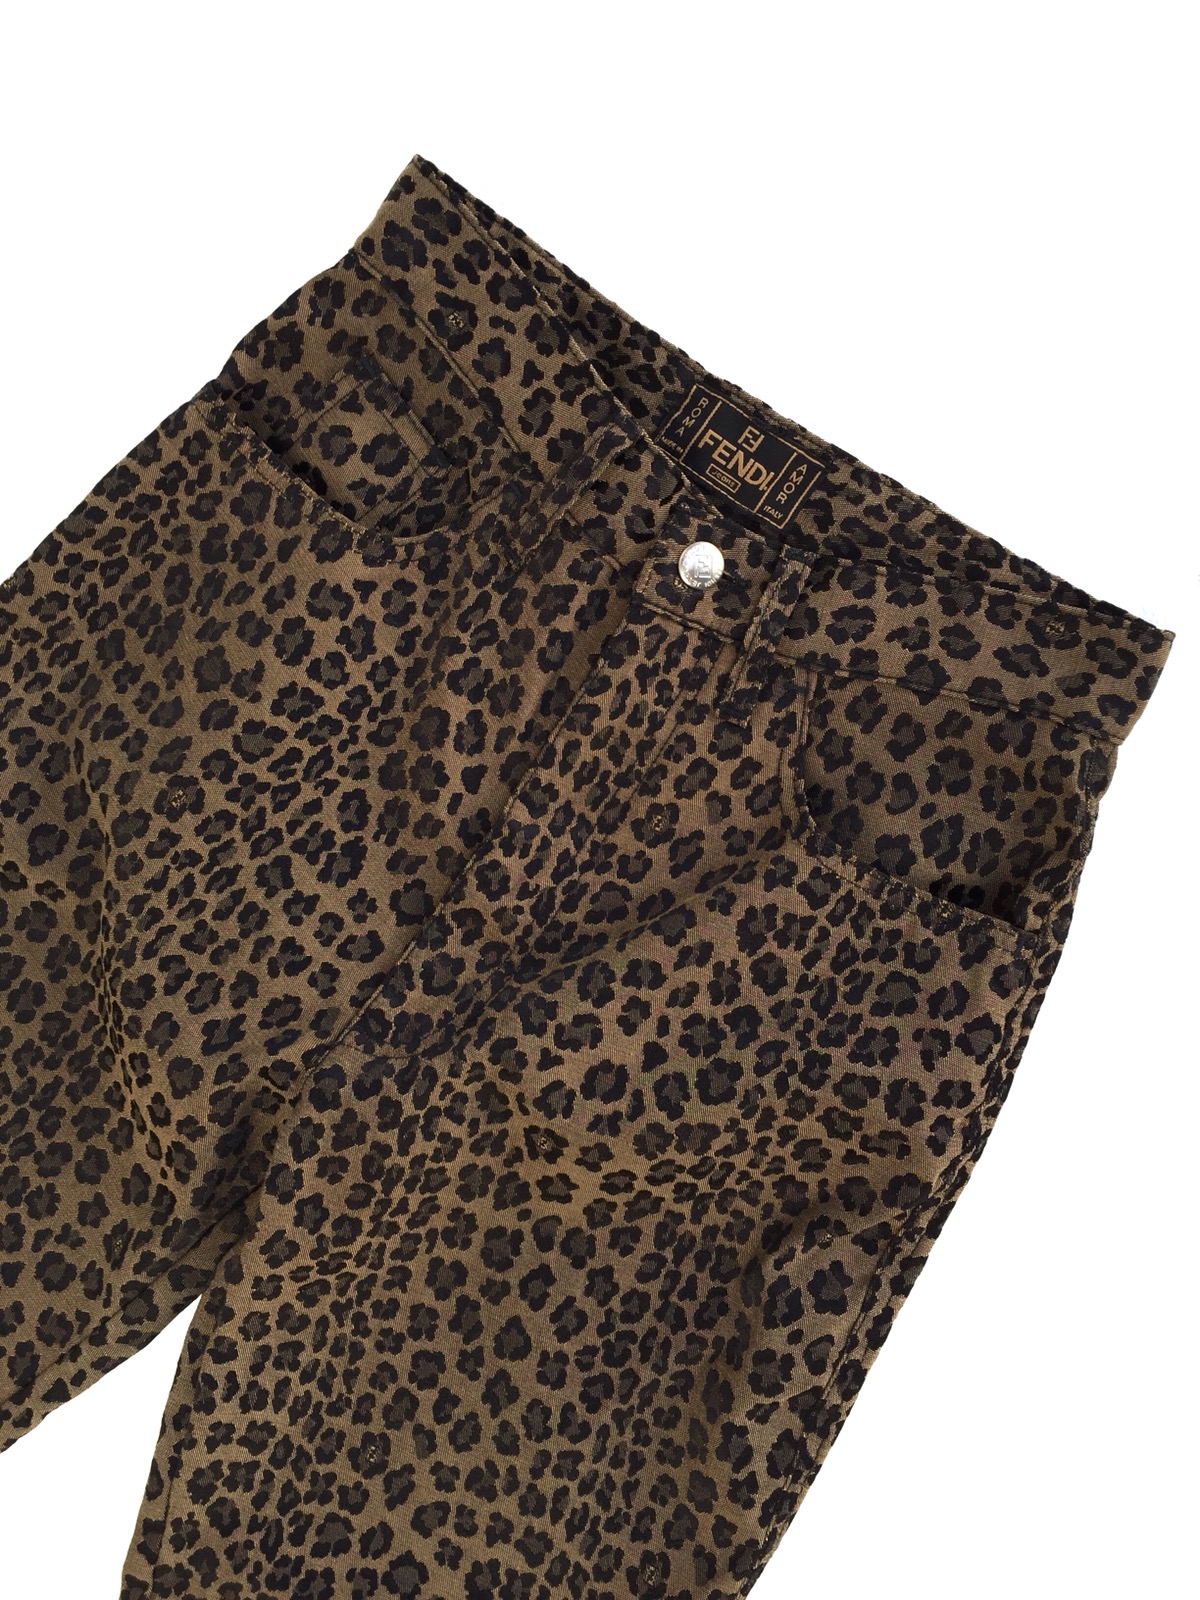 Vintage Authentic Fendi Leopard Pants - 5